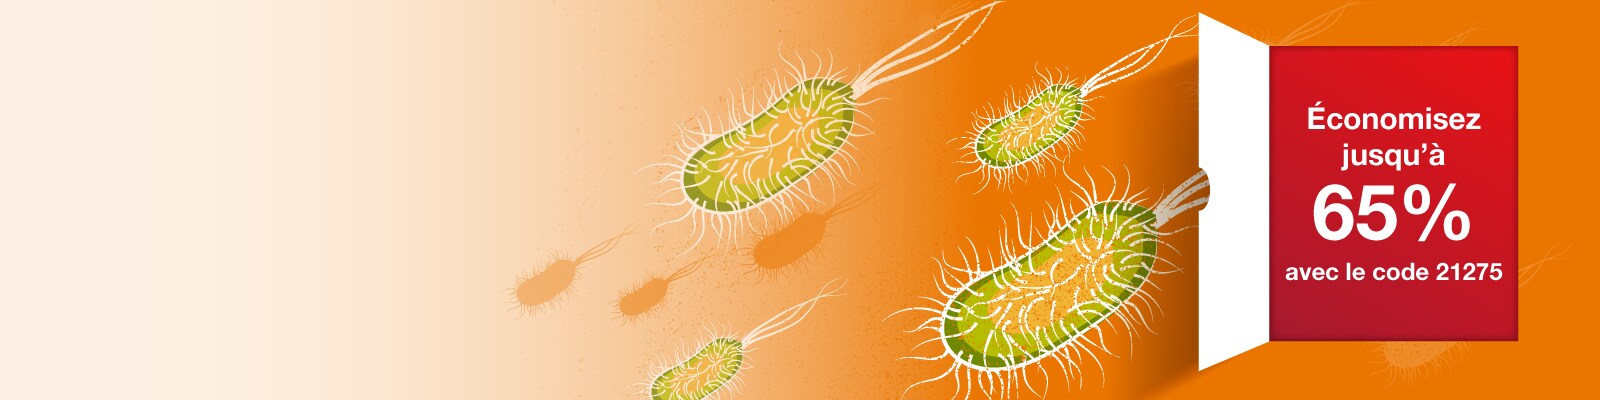 Transformation d'E.coli bannière